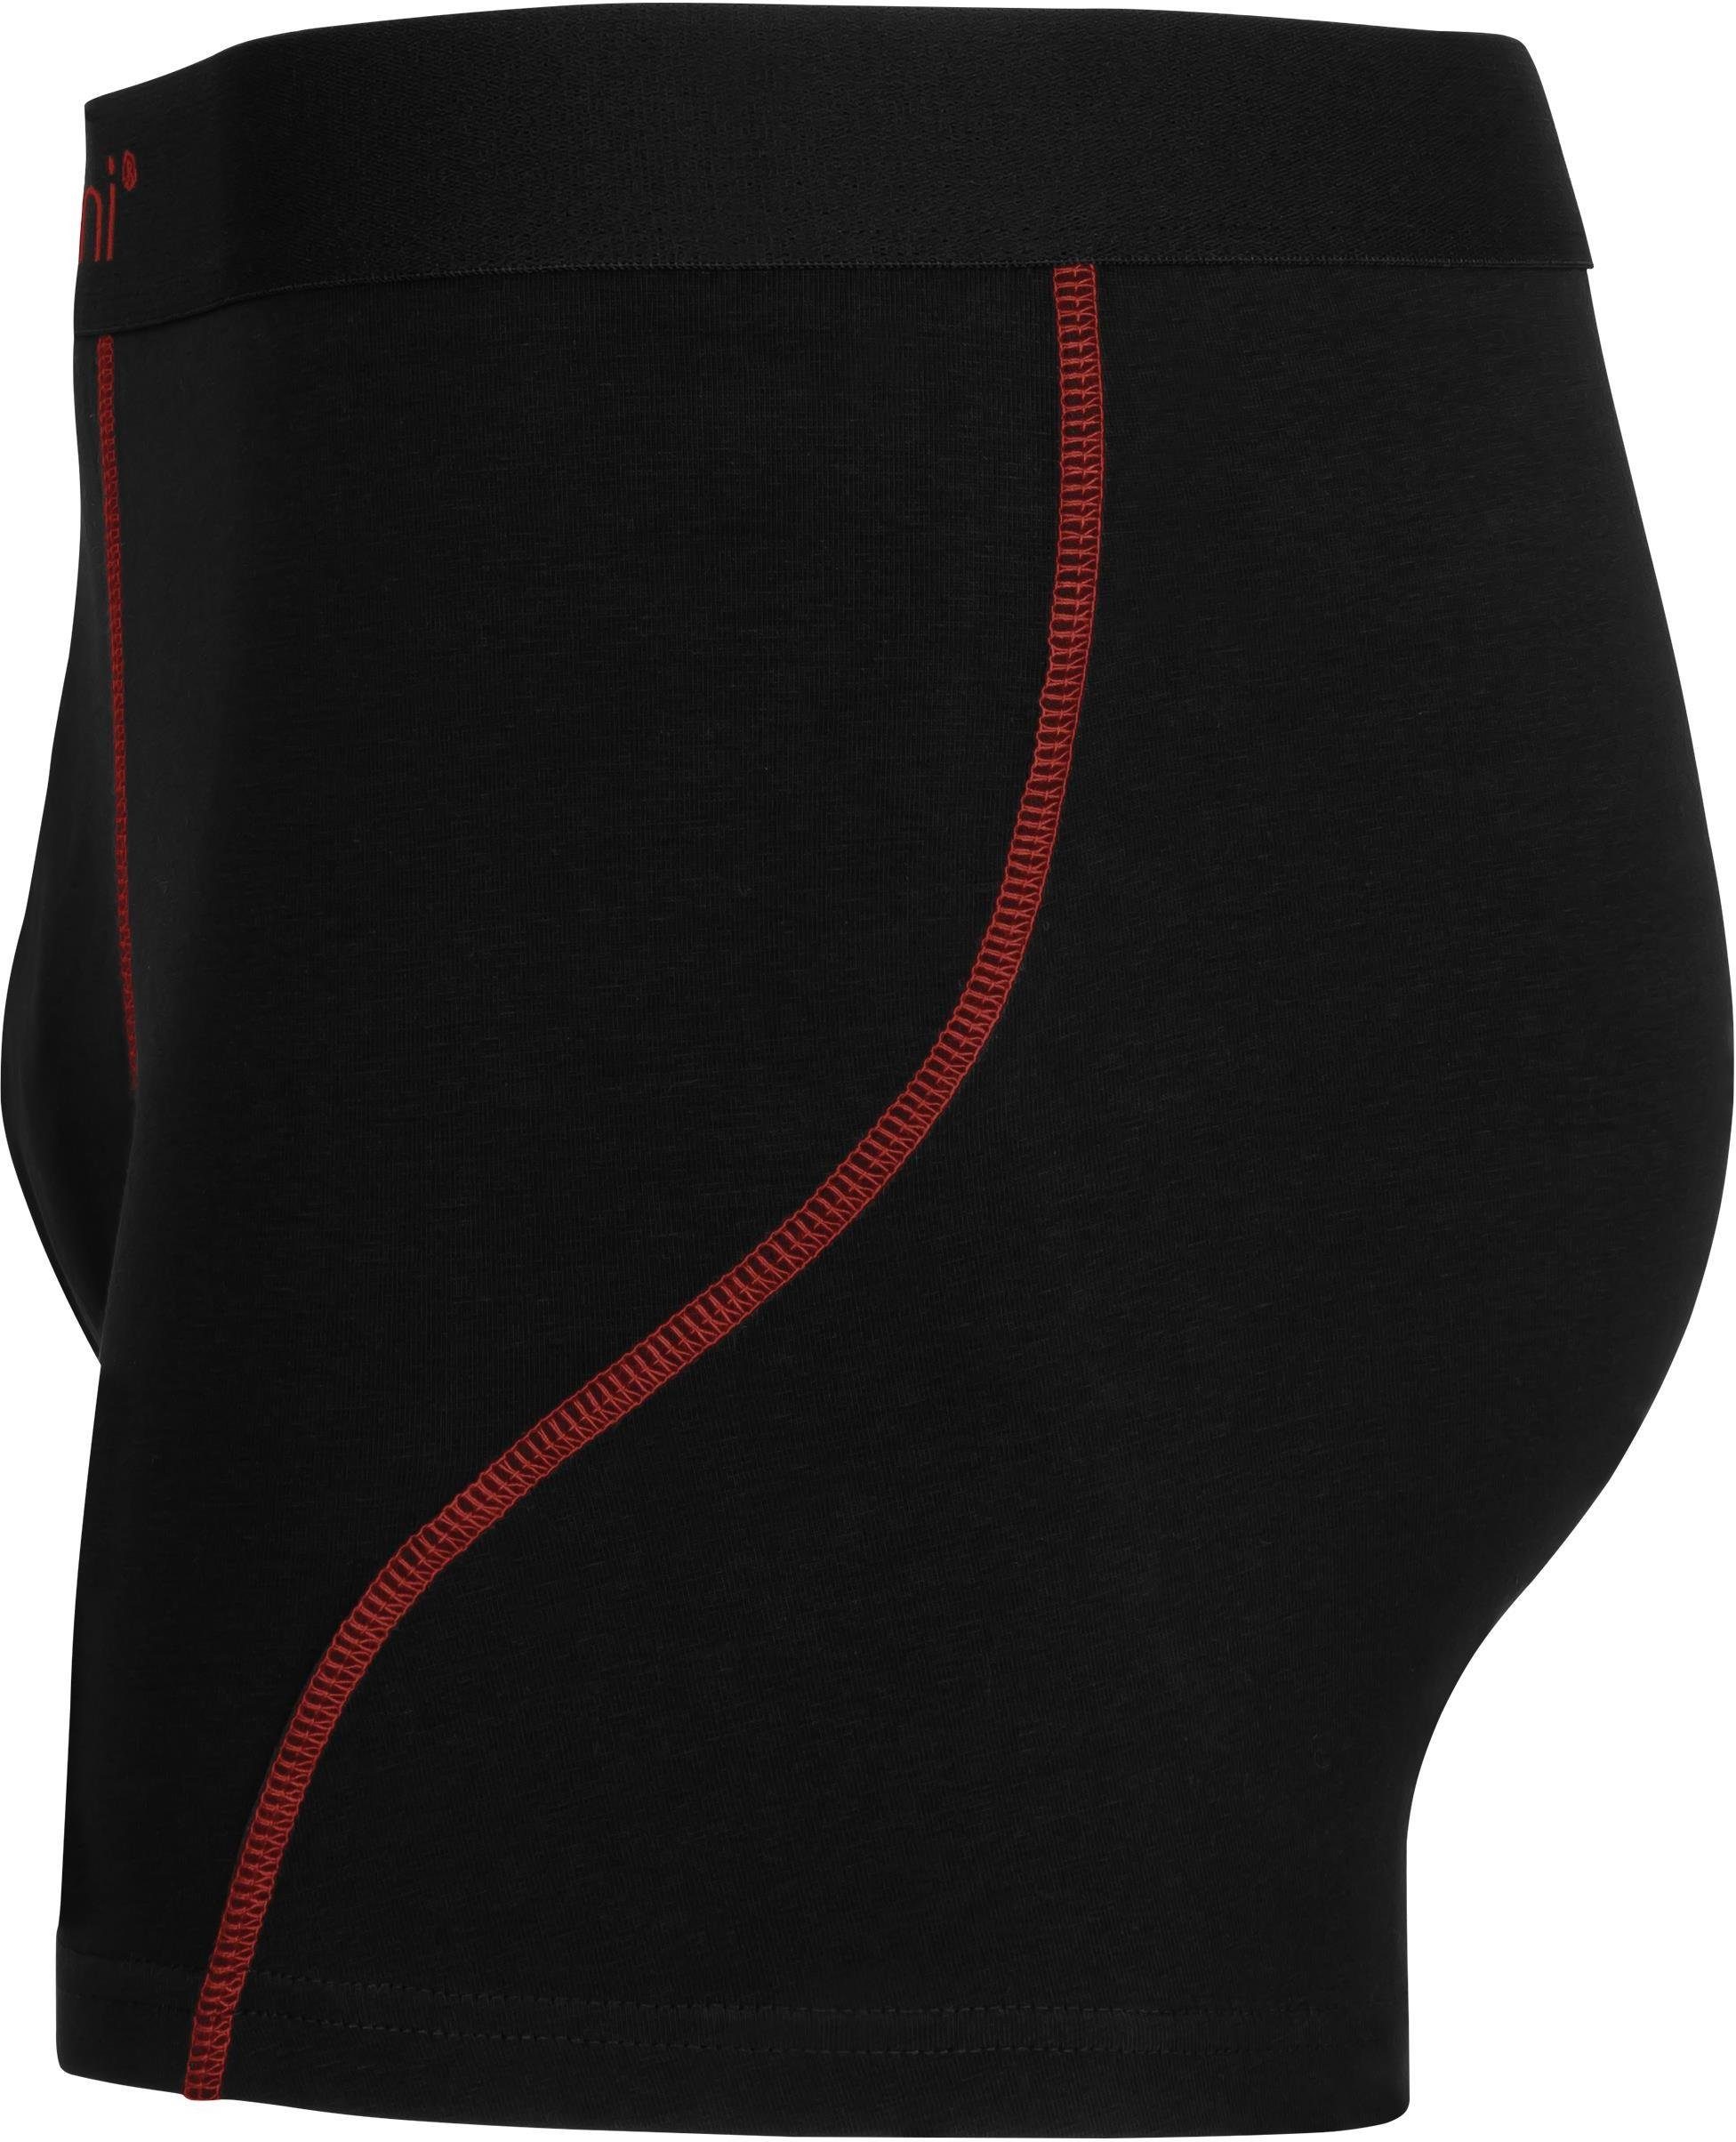 normani Boxershorts für Baumwolle Herren Männer x Baumwoll-Boxershorts atmungsaktiver 12 Lachs/Rot/Schwarz Unterhose aus